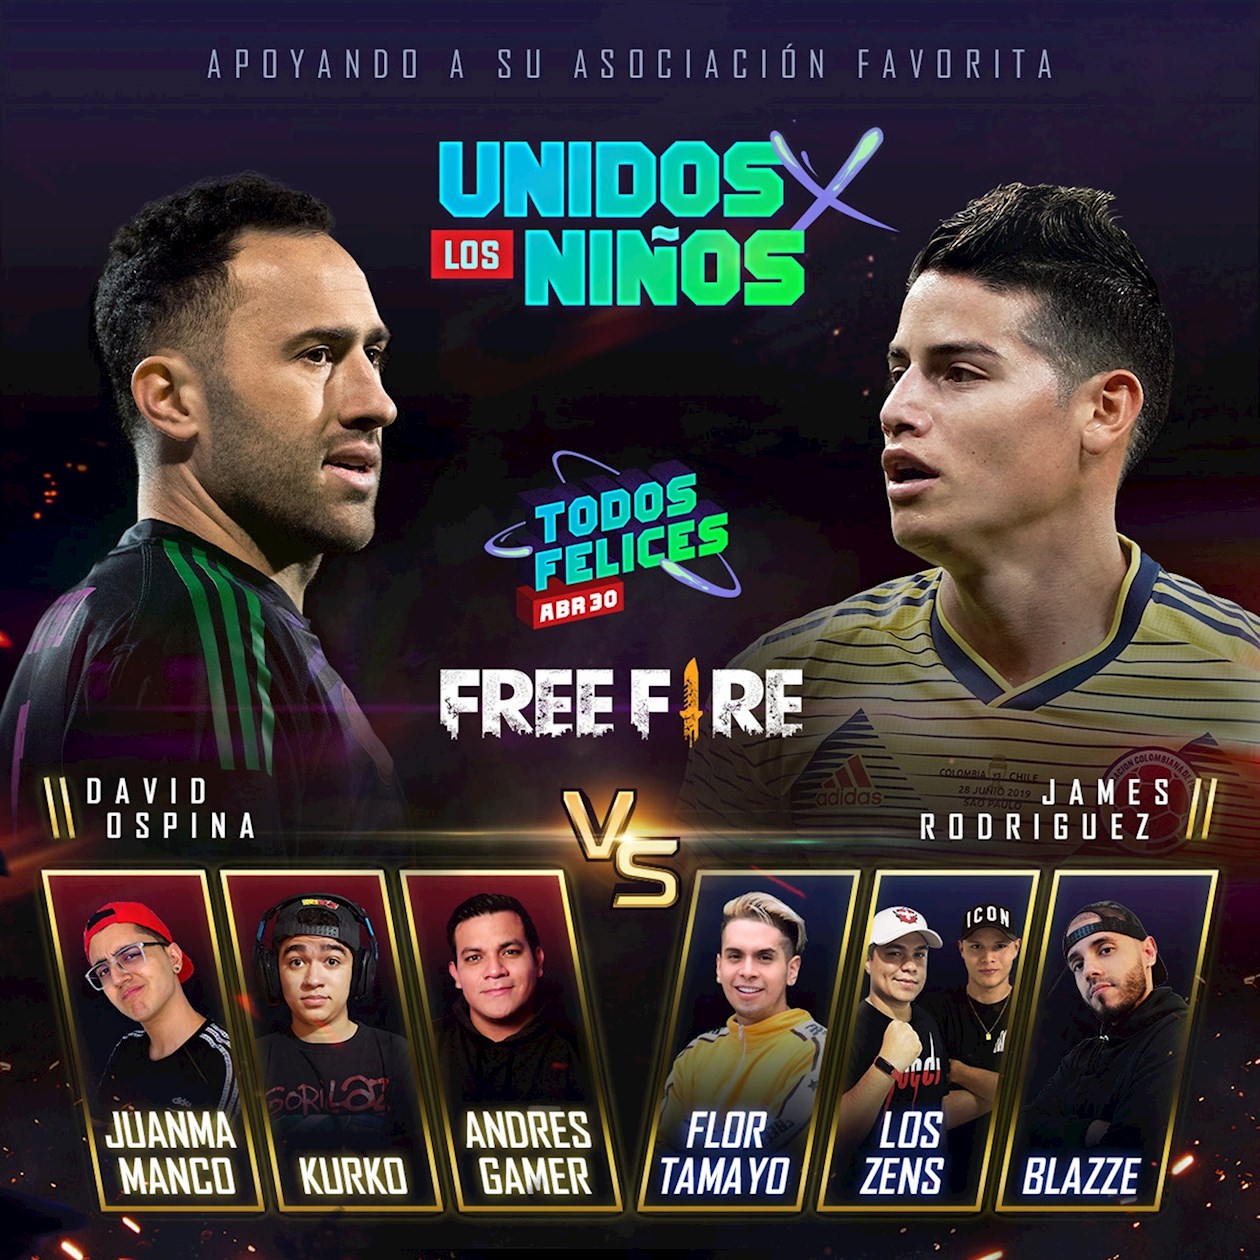 Imagen sin fecha cedida por la empresa Garena que promociona el torneo de Free Fire: Unido x los Niños en el que participarán los futbolistas colombianos David Ospina (i) y James Rodríguez.